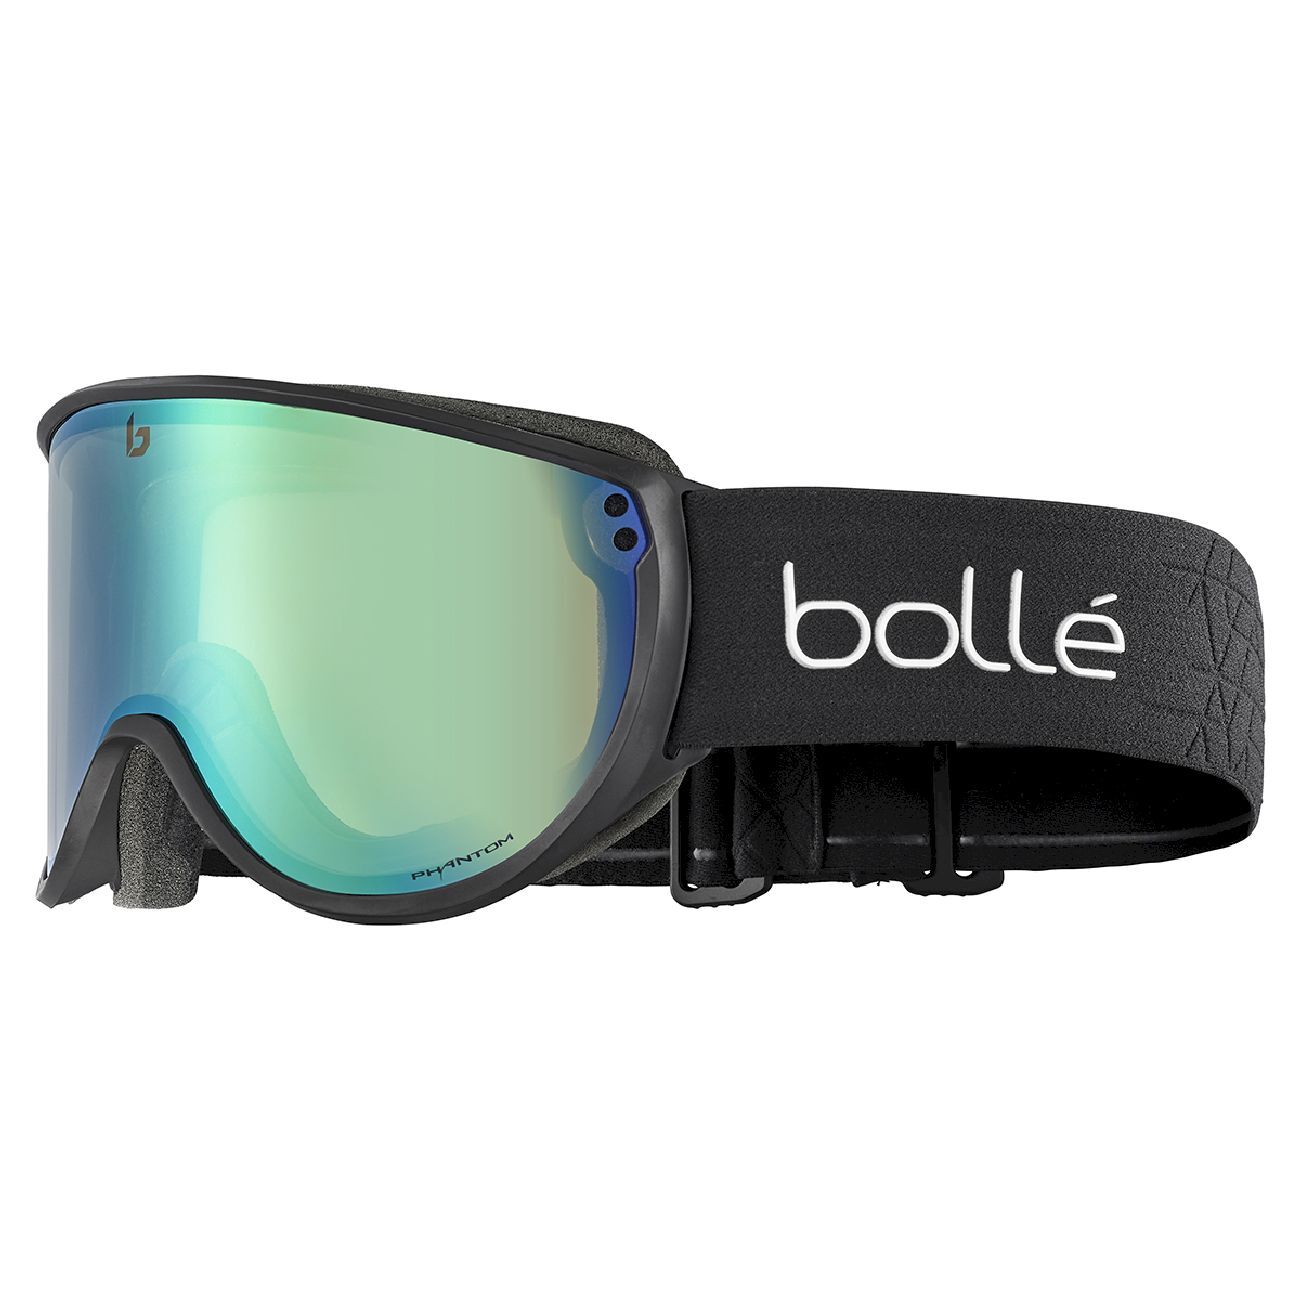 Bollé Blanca - Gafas de esquí